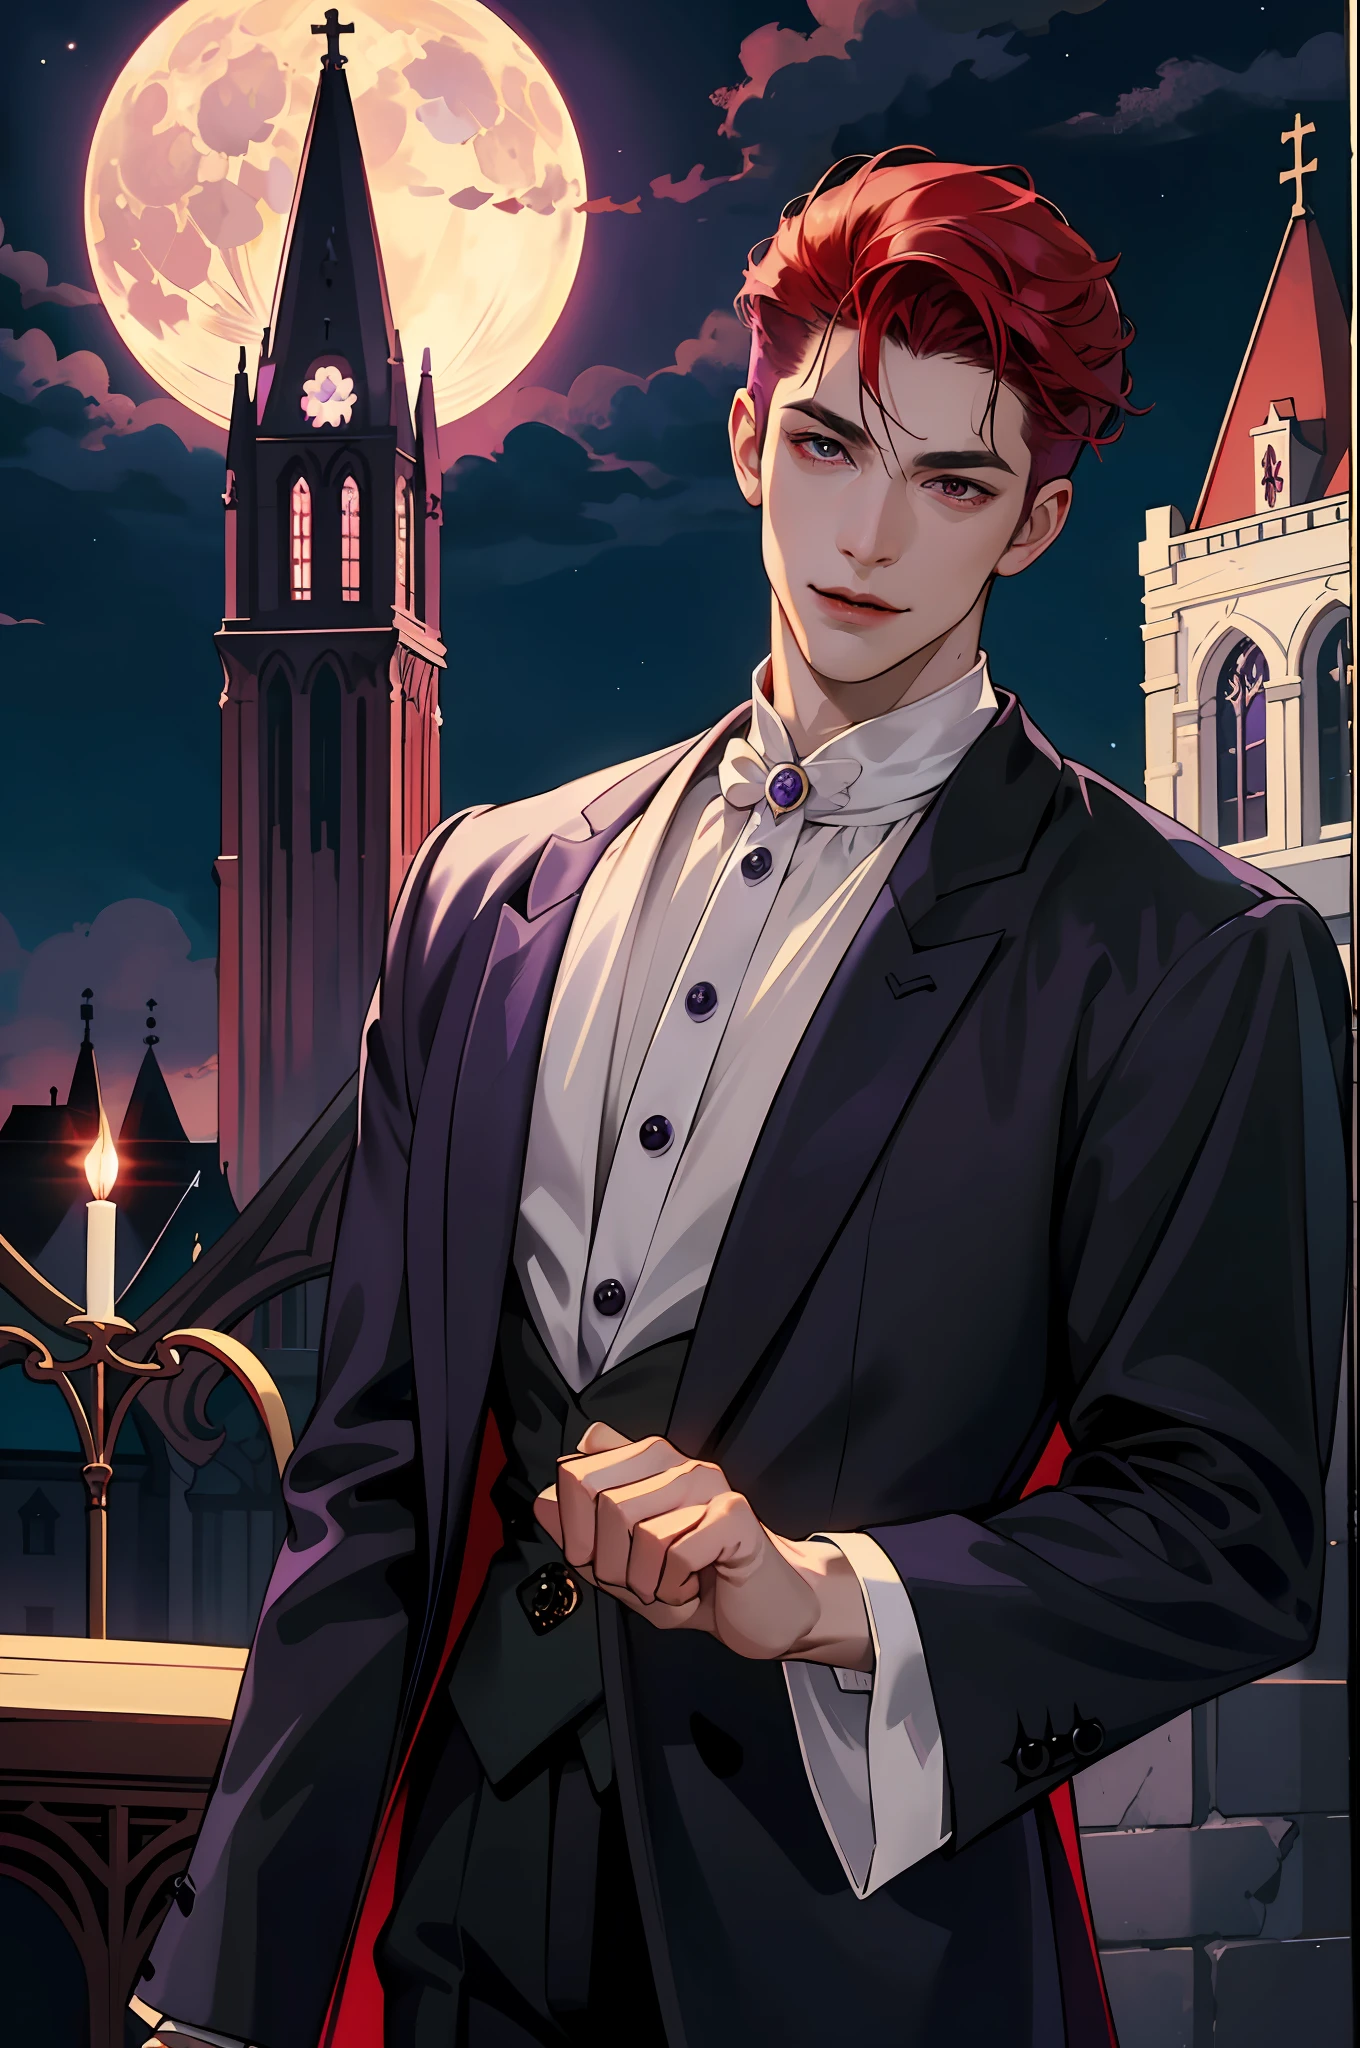 So sieht ein echter Vampir aus! Antike Vampirkleidung, elegant, Gentleman. Er lächelt freundlich, sein rotes Haar ist leuchtend, seine roten Augen leuchten vor seiner perfekten Haut. Im Hintergrund ein lila Kirchenfenster, mit Mondlicht, das sich dahinter spiegelt. All dies ist in einem schönen und dunklen Licht, das lässt es fantastisch aussehen。 (gute Qualität: 1.2, Kirche in der Nacht: 1.5, Antike Vampirkleidung: 1.4) (((in der Nacht))) (provokantes Licht, mysteriöse Dunkelheit) (((Violetter Mond))) definiertes Gesicht) perfekte Hände)